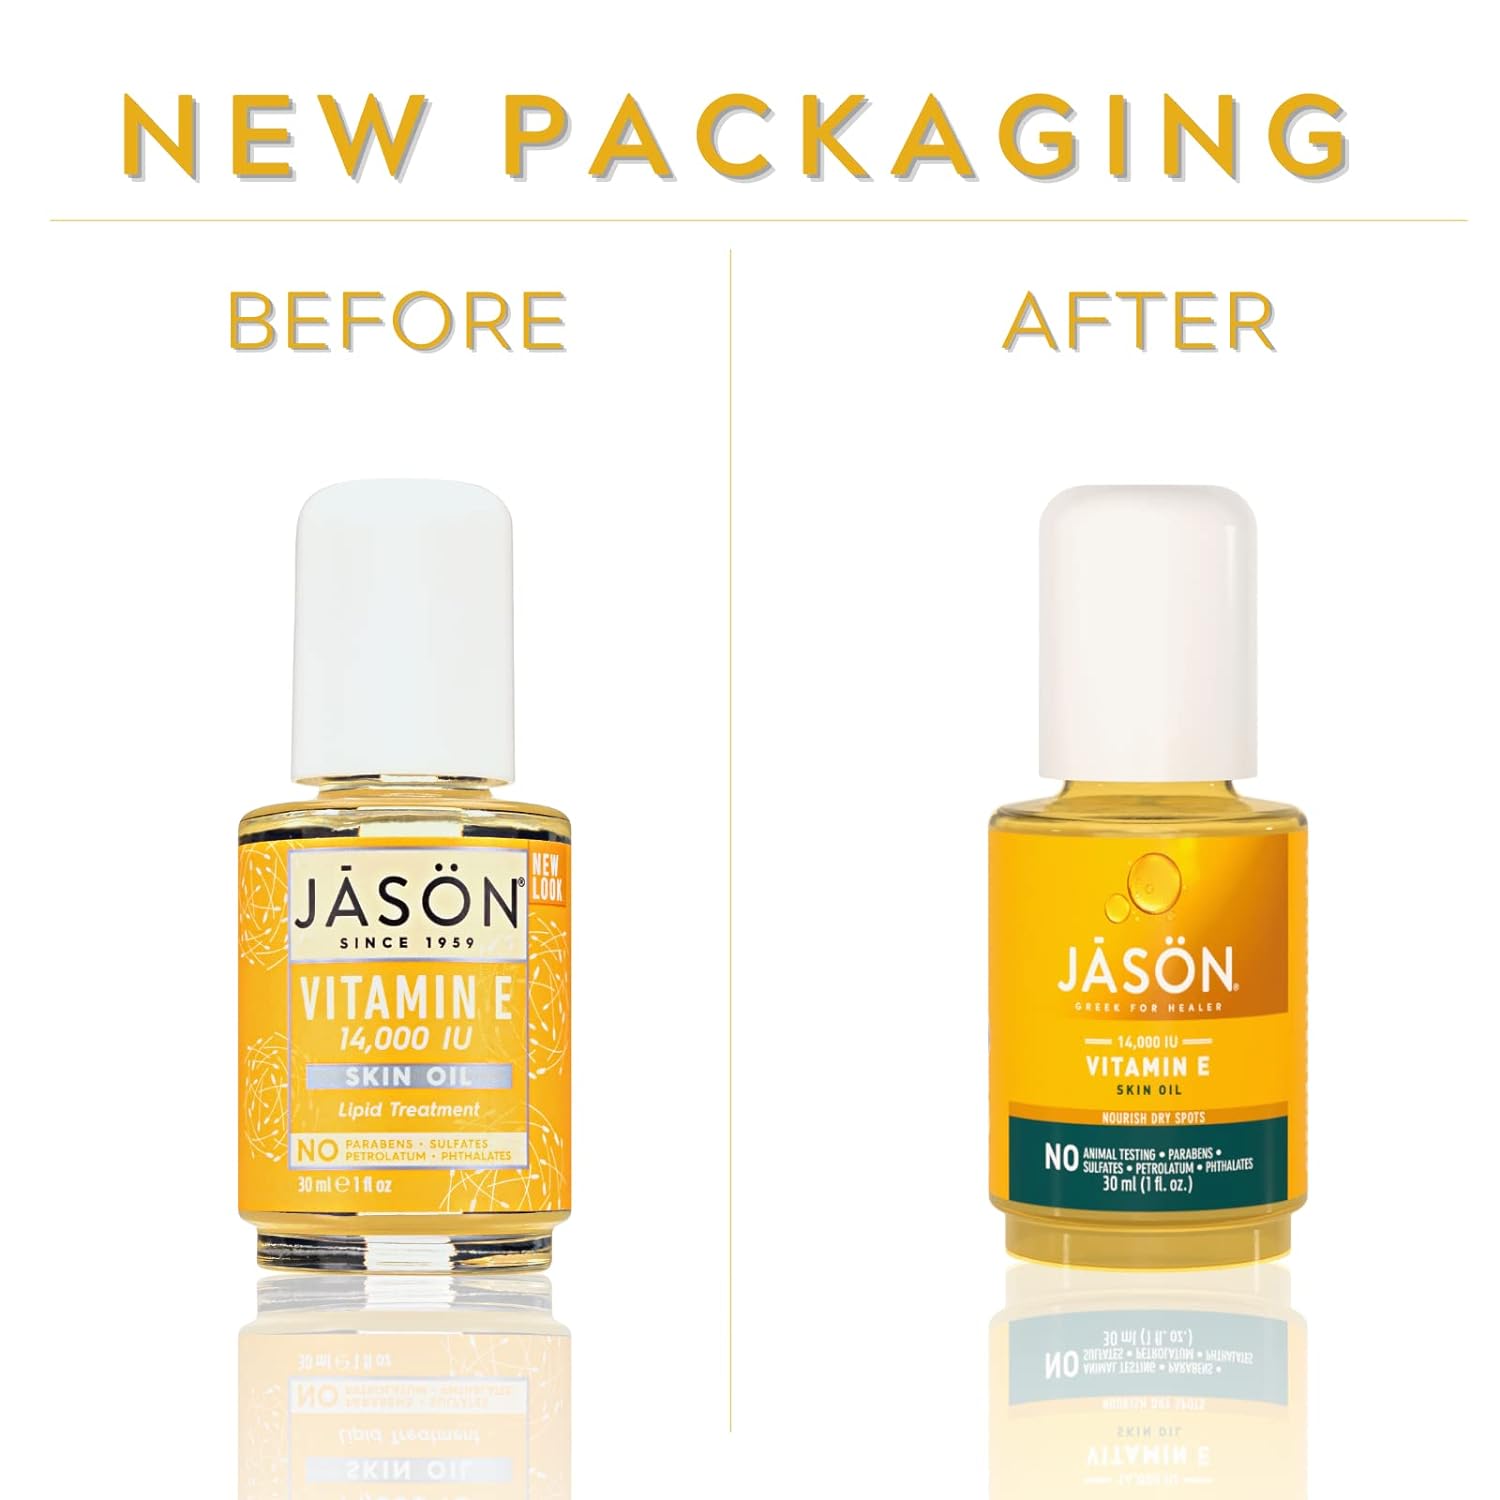 Jason Skin Oil, Vitamin E 14,000 IU, Lipid Treatment, 1 Oz : Vitamin E Oil For Skin : Health & Household